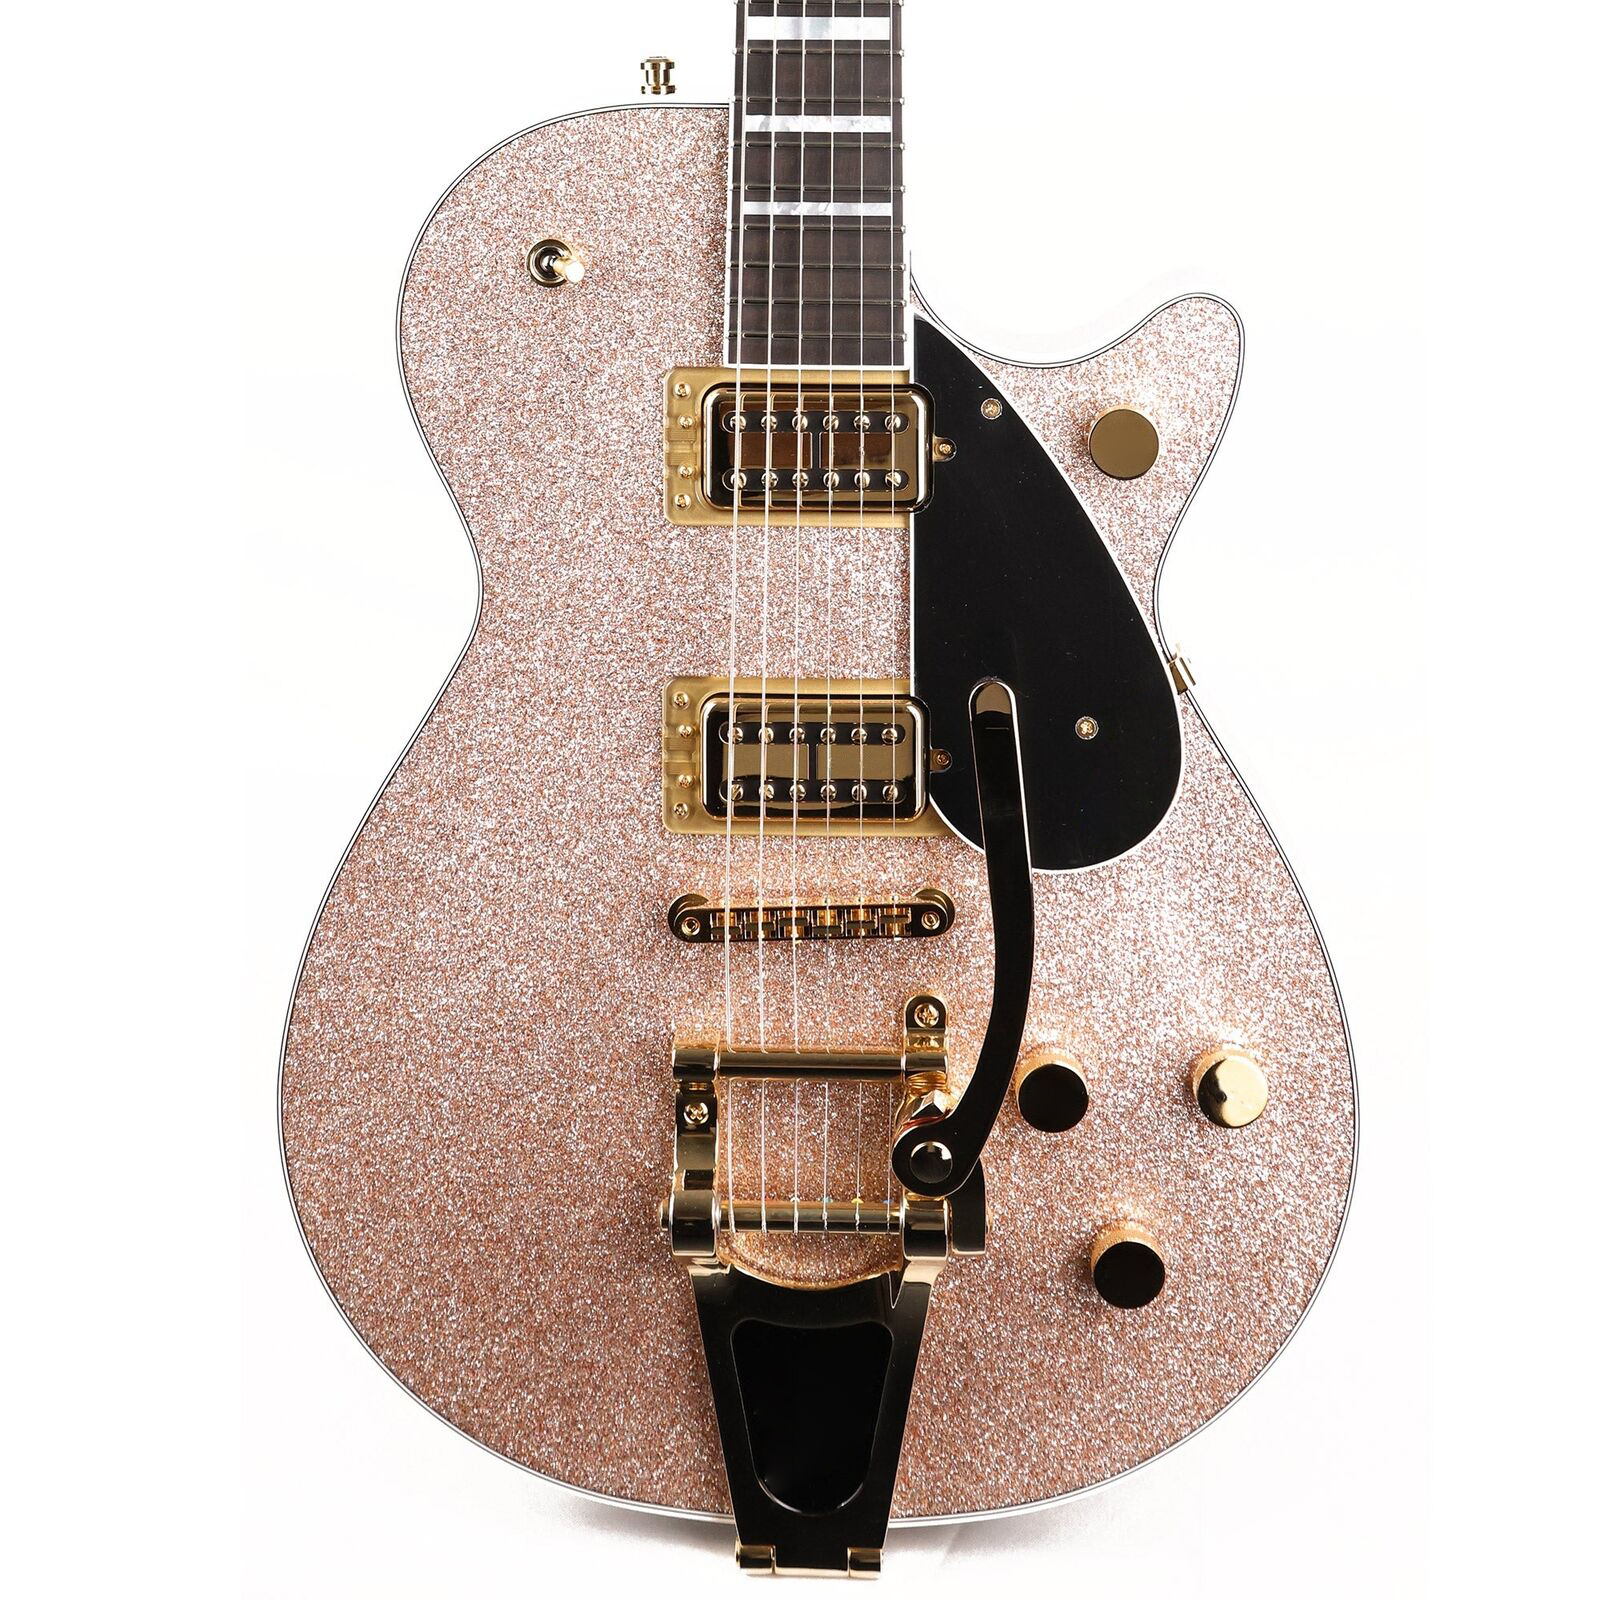 G6229TG限定版プレーヤーエディションスパークルジェットBTシャンパンスパークルエレクトリックギターと同じように写真